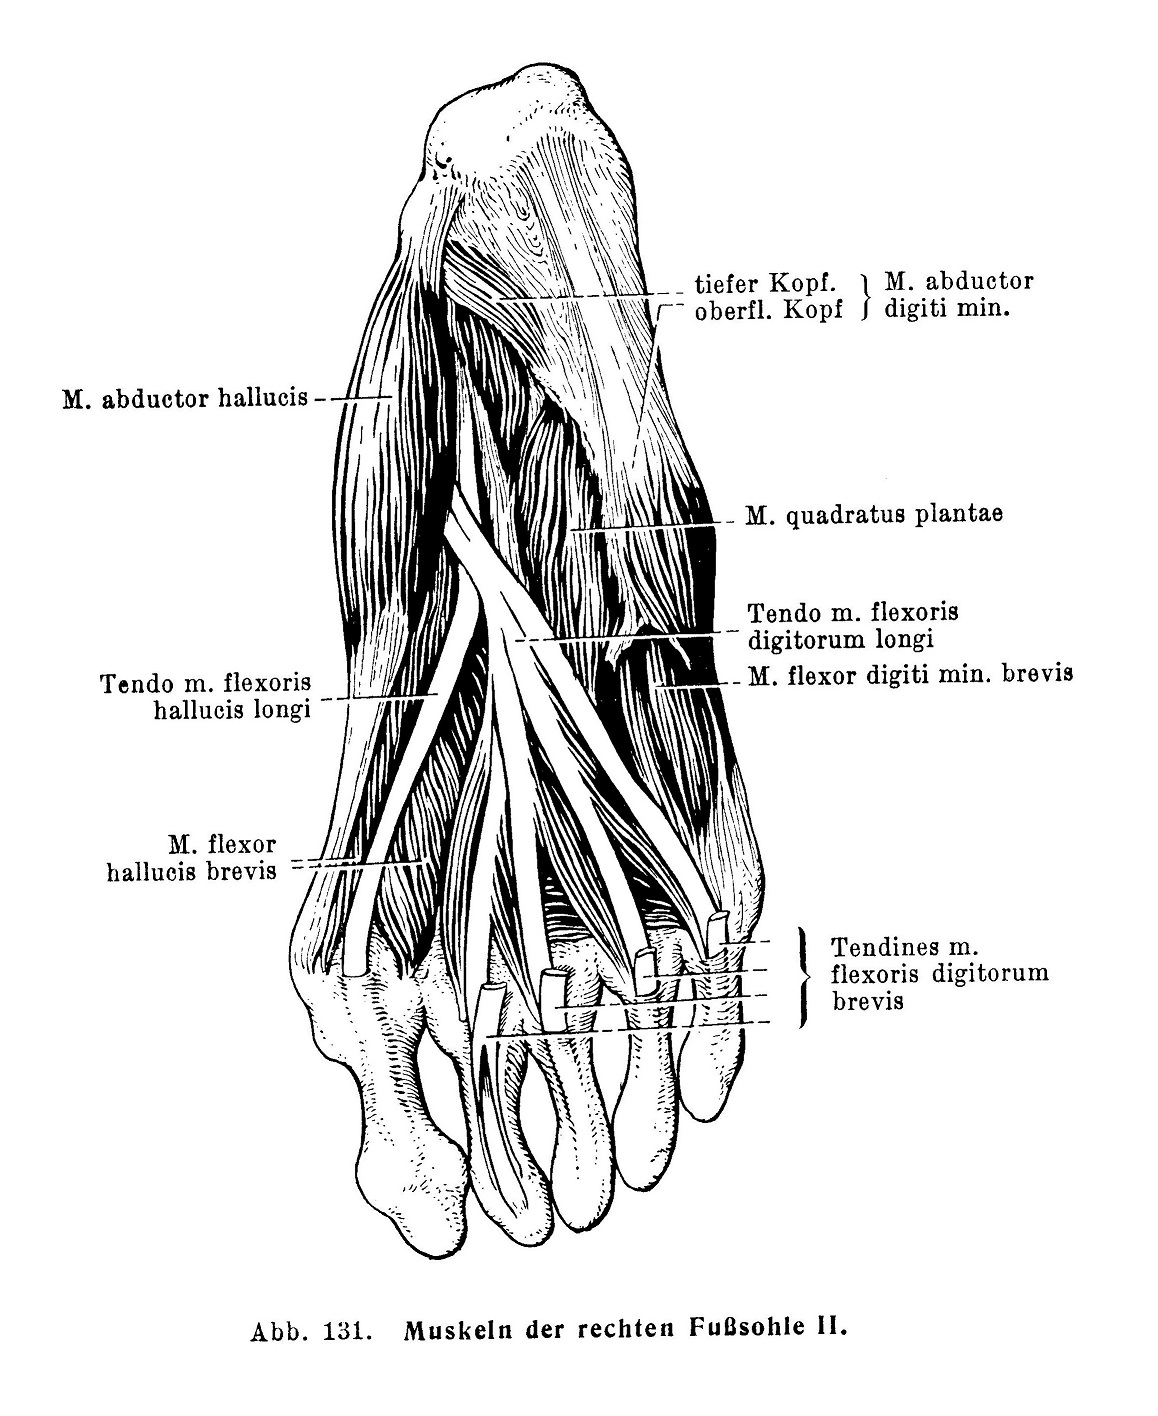 Muskeln der rechten Fußsohle II